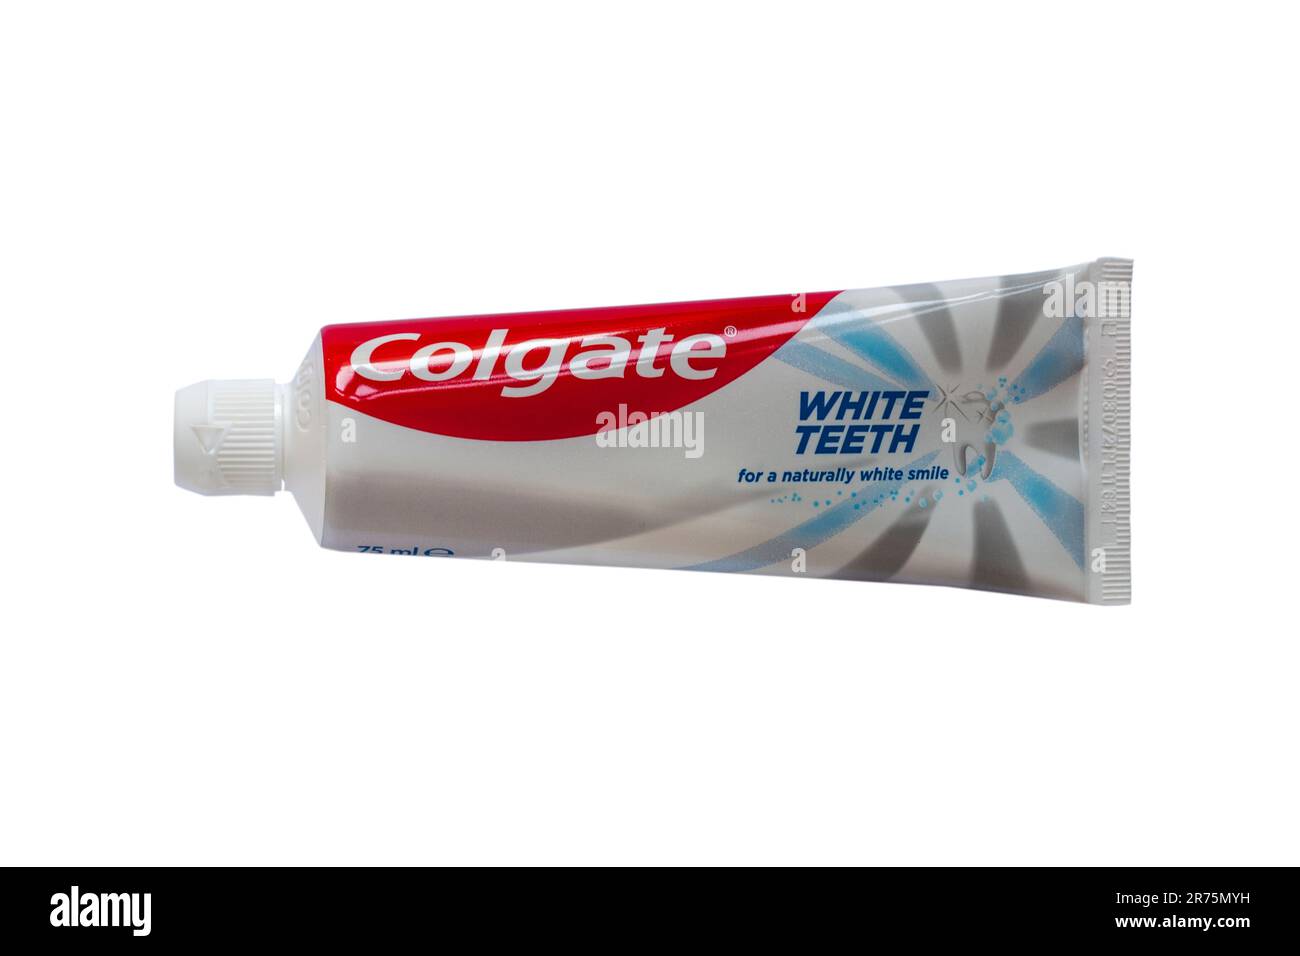 Röhre mit Colgate White Zahnpasta für natürlich weißere Zähne isoliert auf weißem Hintergrund – recycelbare Röhre Stockfoto